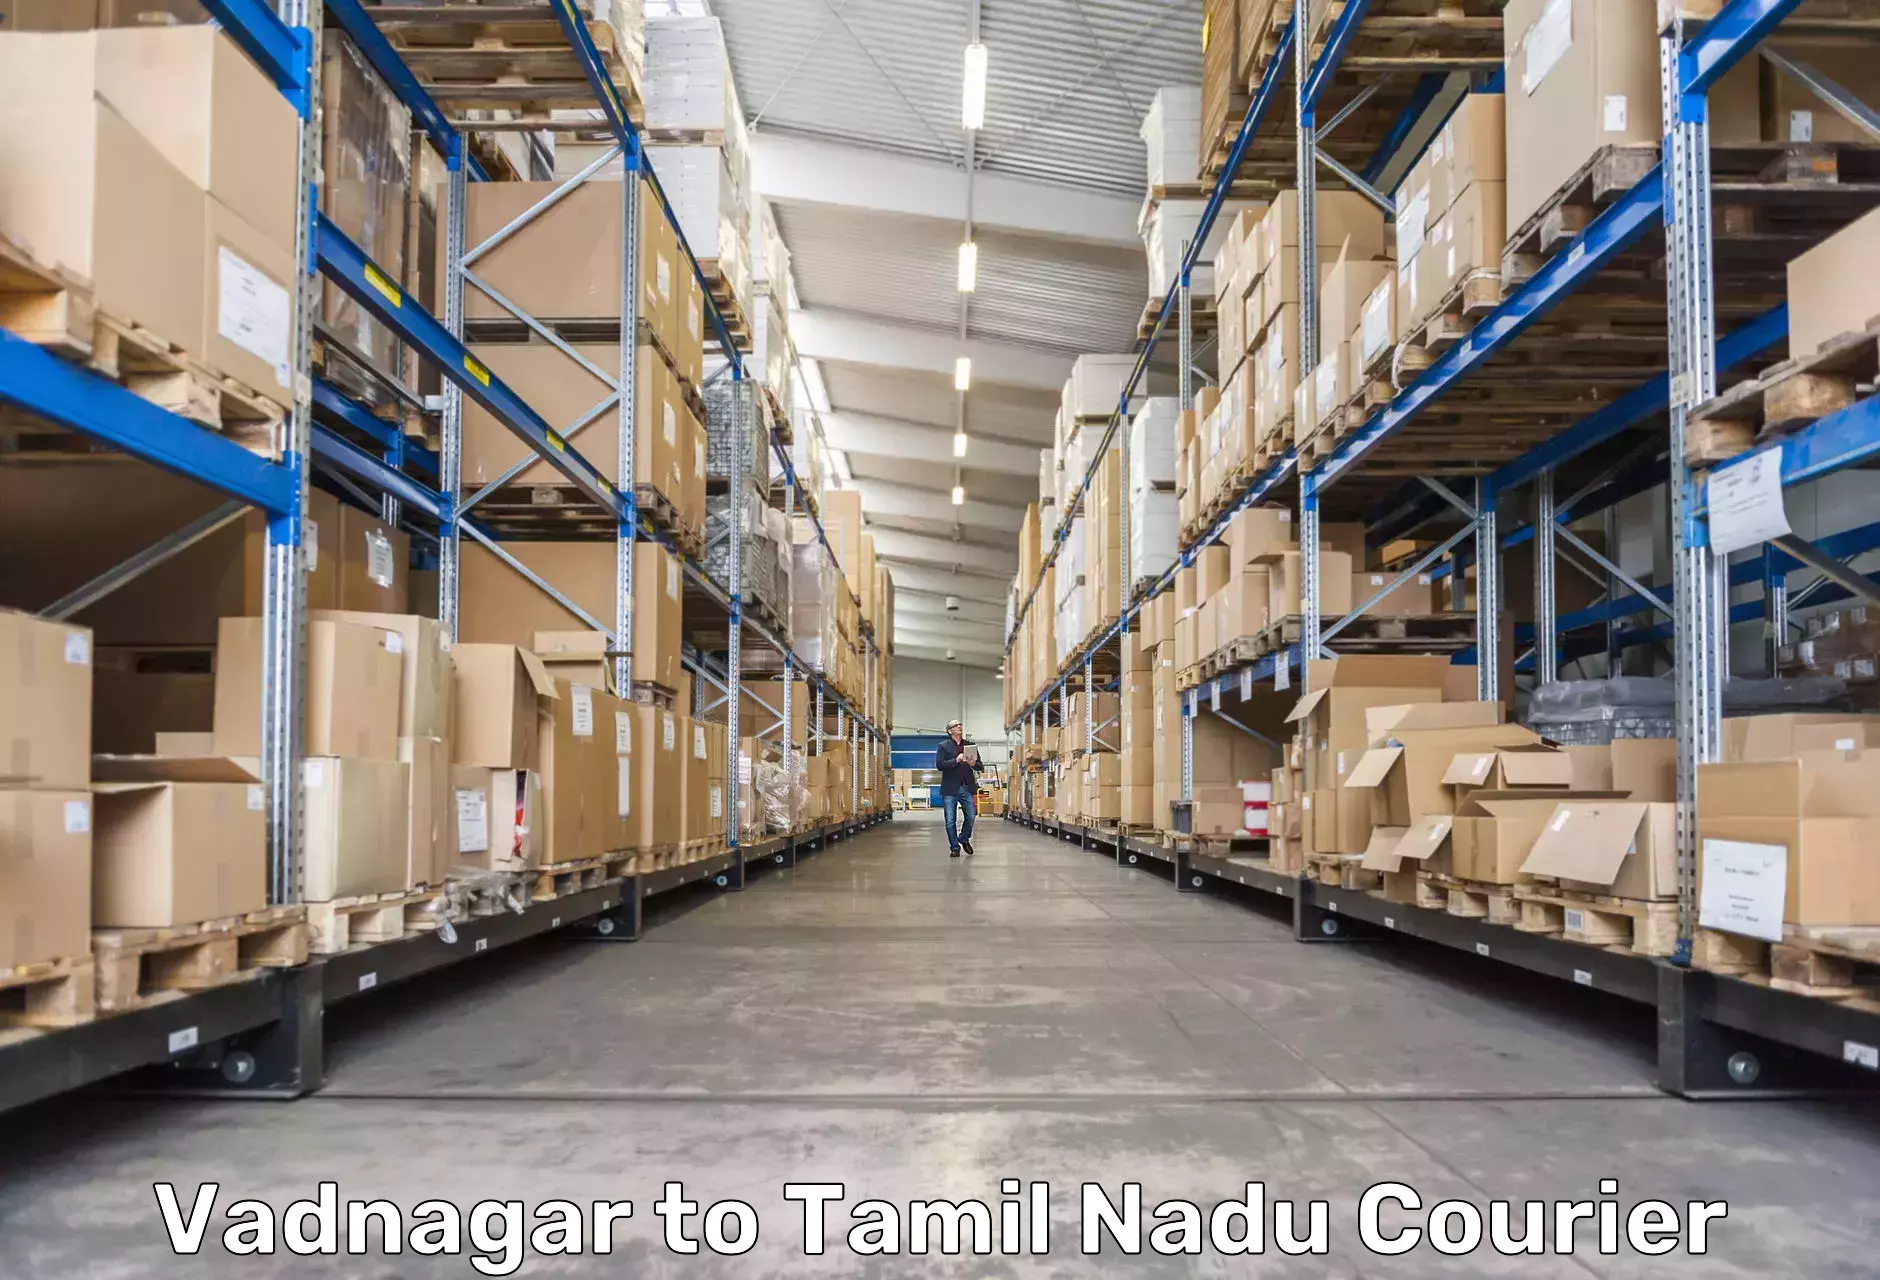 Urgent courier needs in Vadnagar to Tamil Nadu